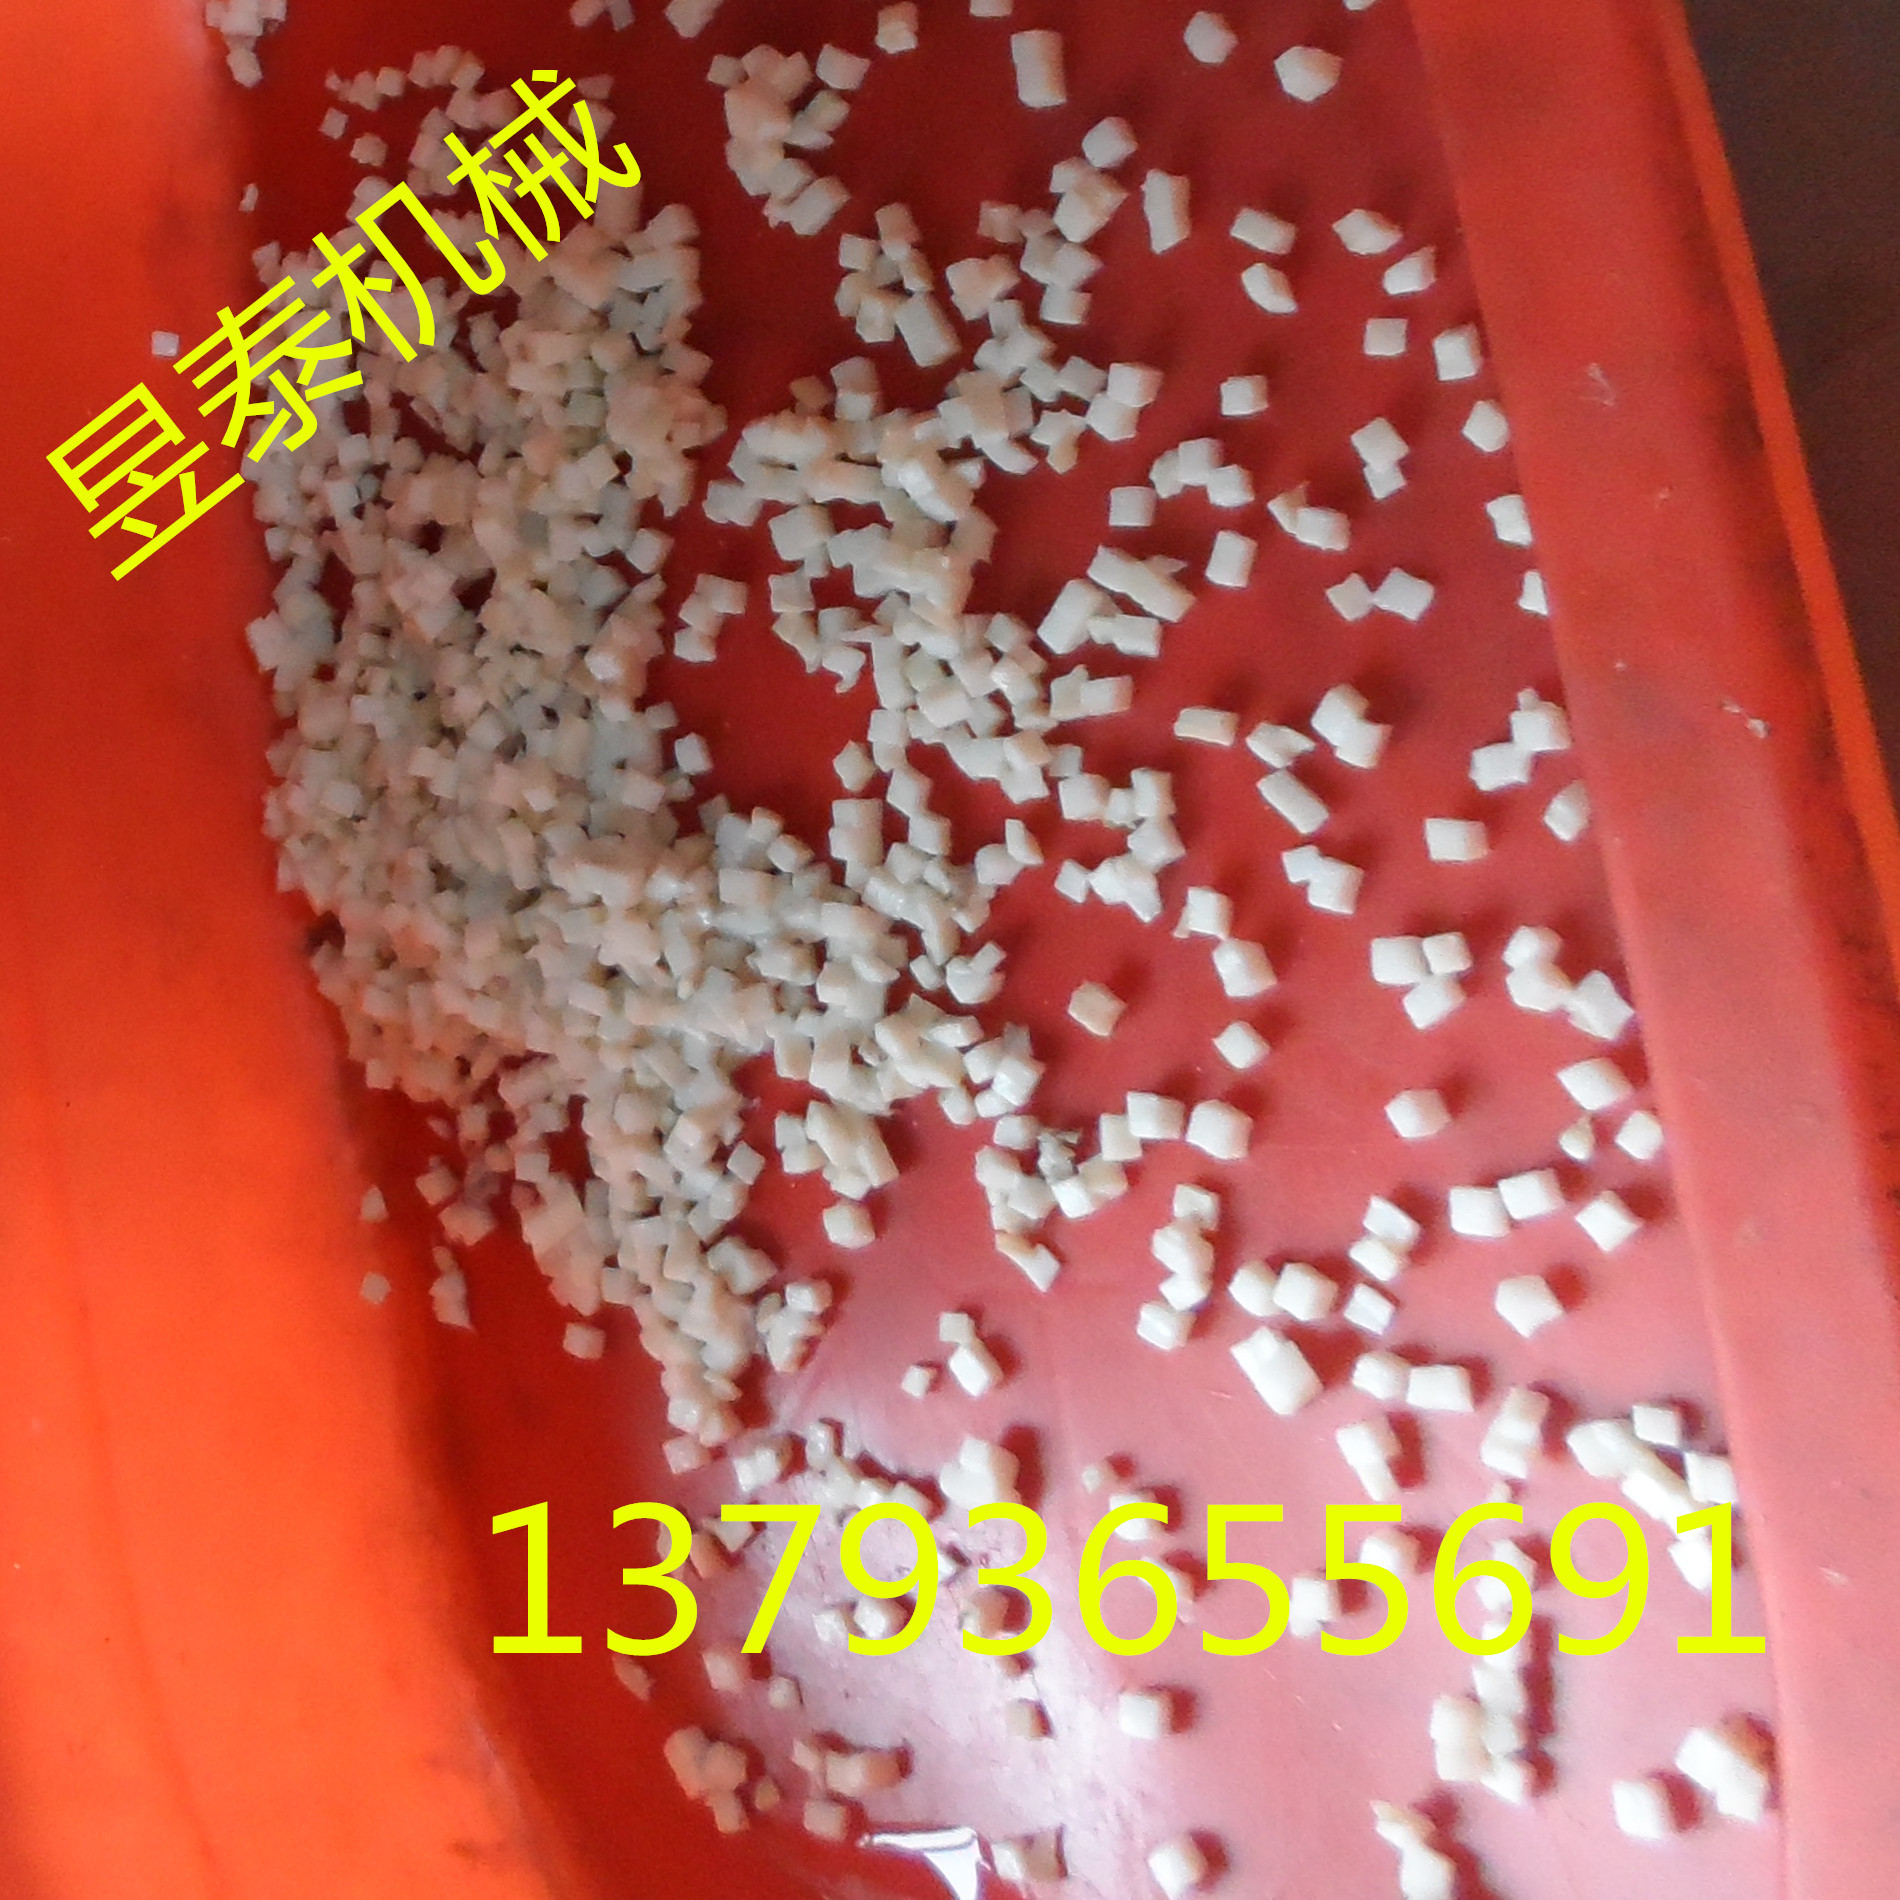 豆腐切丁机视频  鲜豆腐切丁机切割尺寸可调示例图1